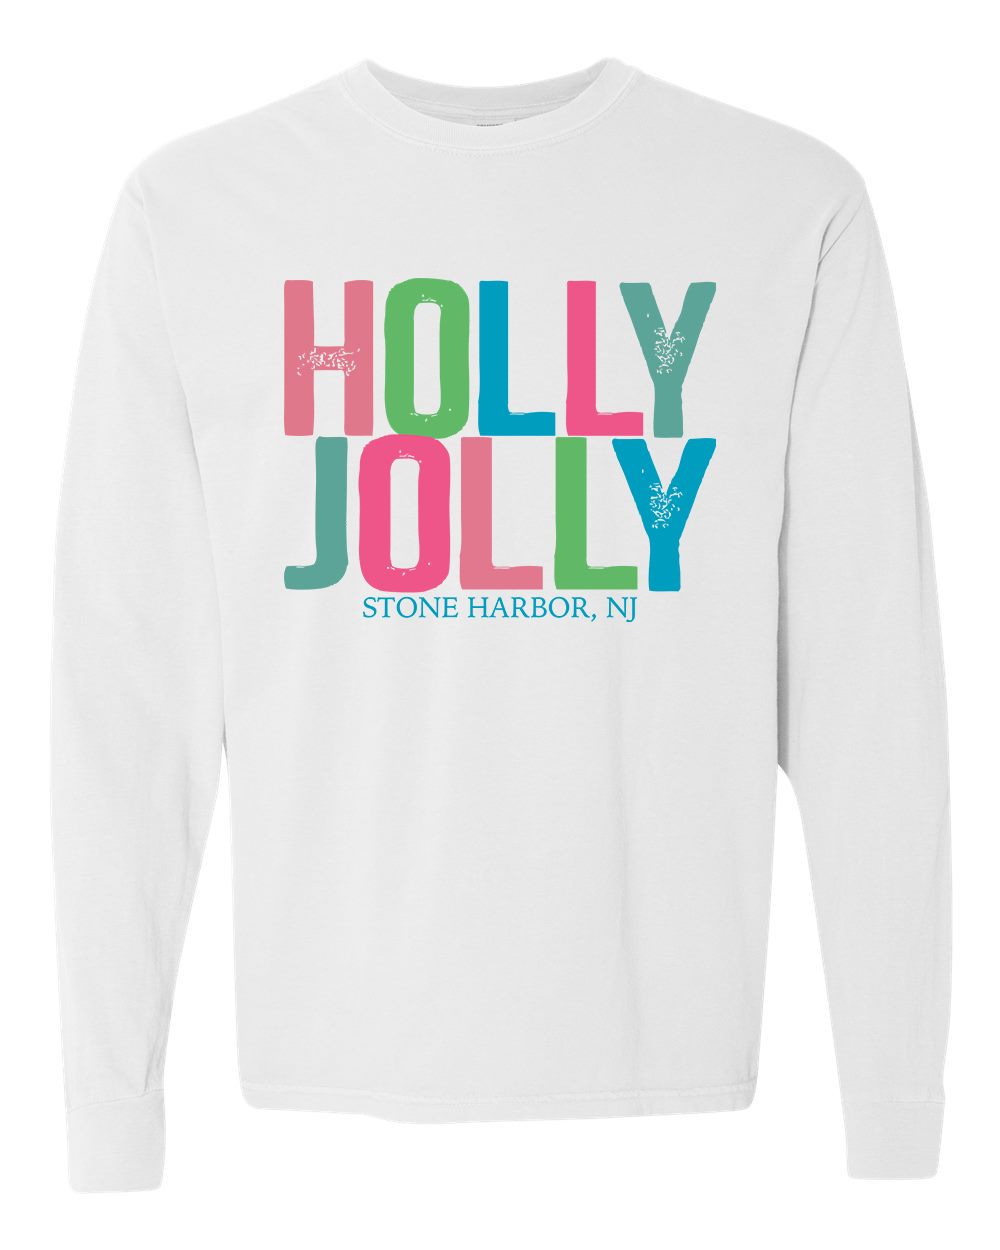 Stone Harbor Holly Jolly Long Sleeve Tee - White